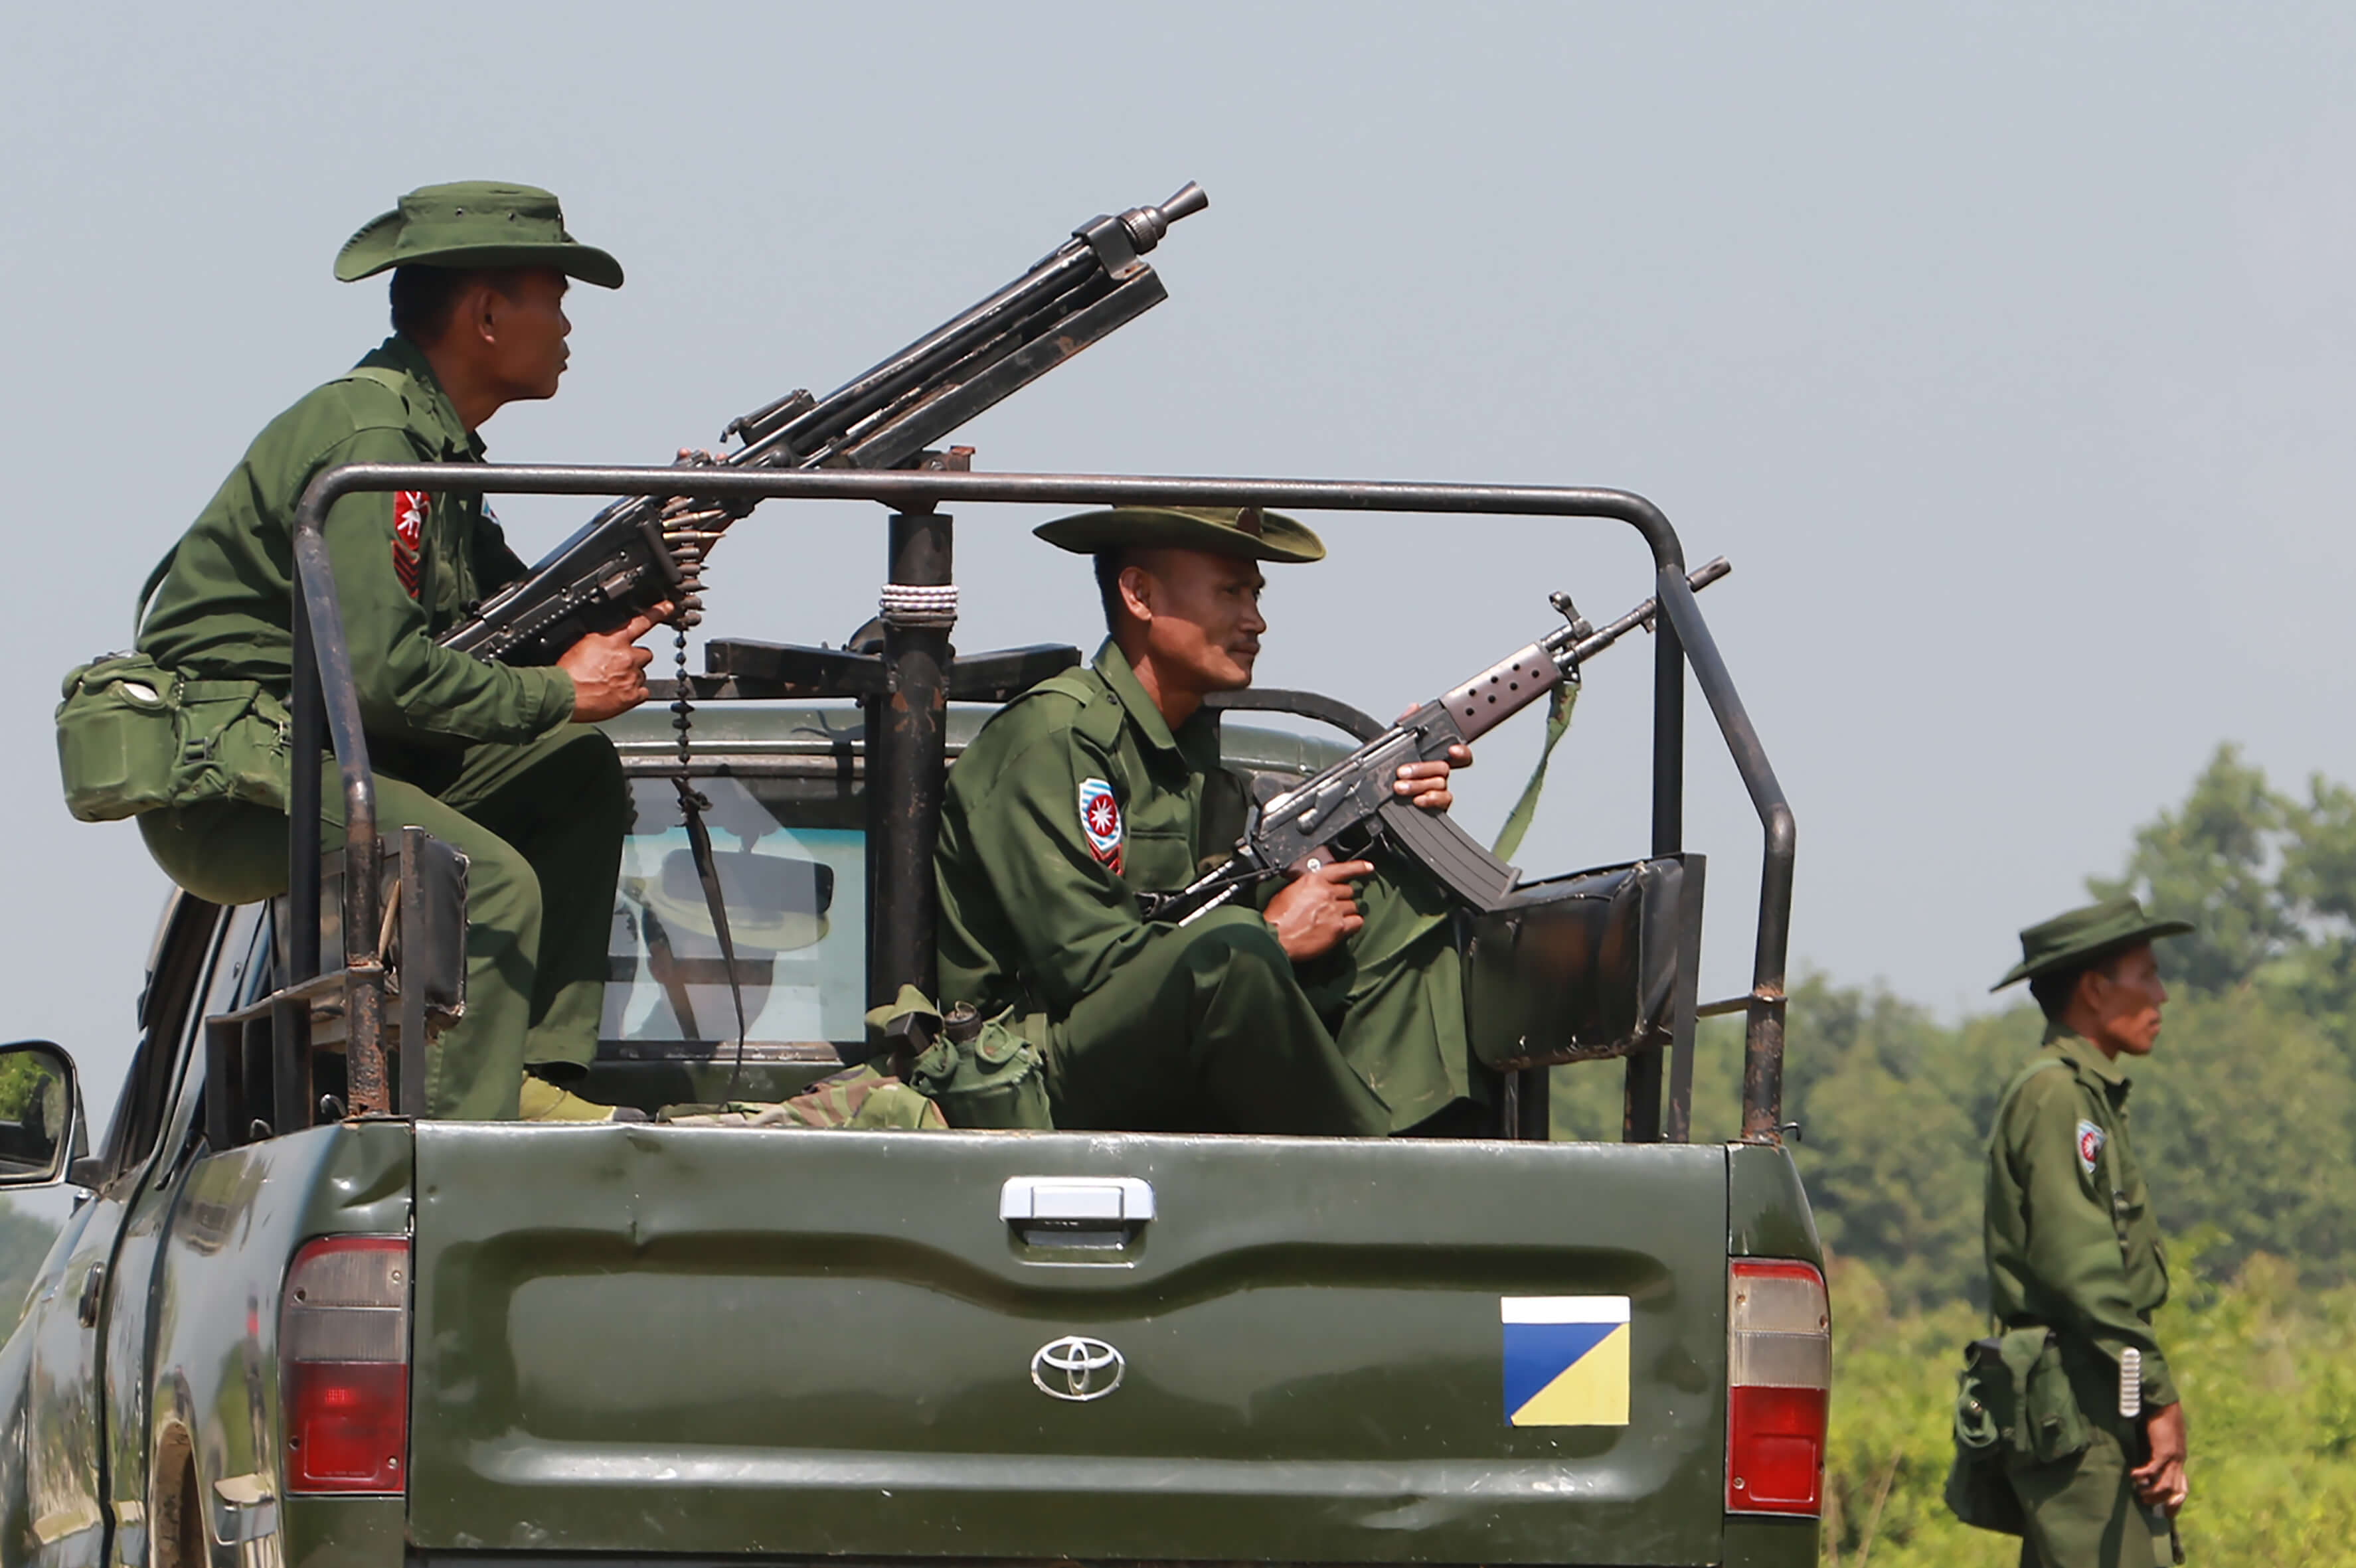 Le 16 octobre 2016, des troupes lourdement armées de l'armée du Myanmar patrouillent dans la région de Kyinkanpyin, dans la ville de Maungdaw située à Rakhine près de la frontière du Bangladesh.